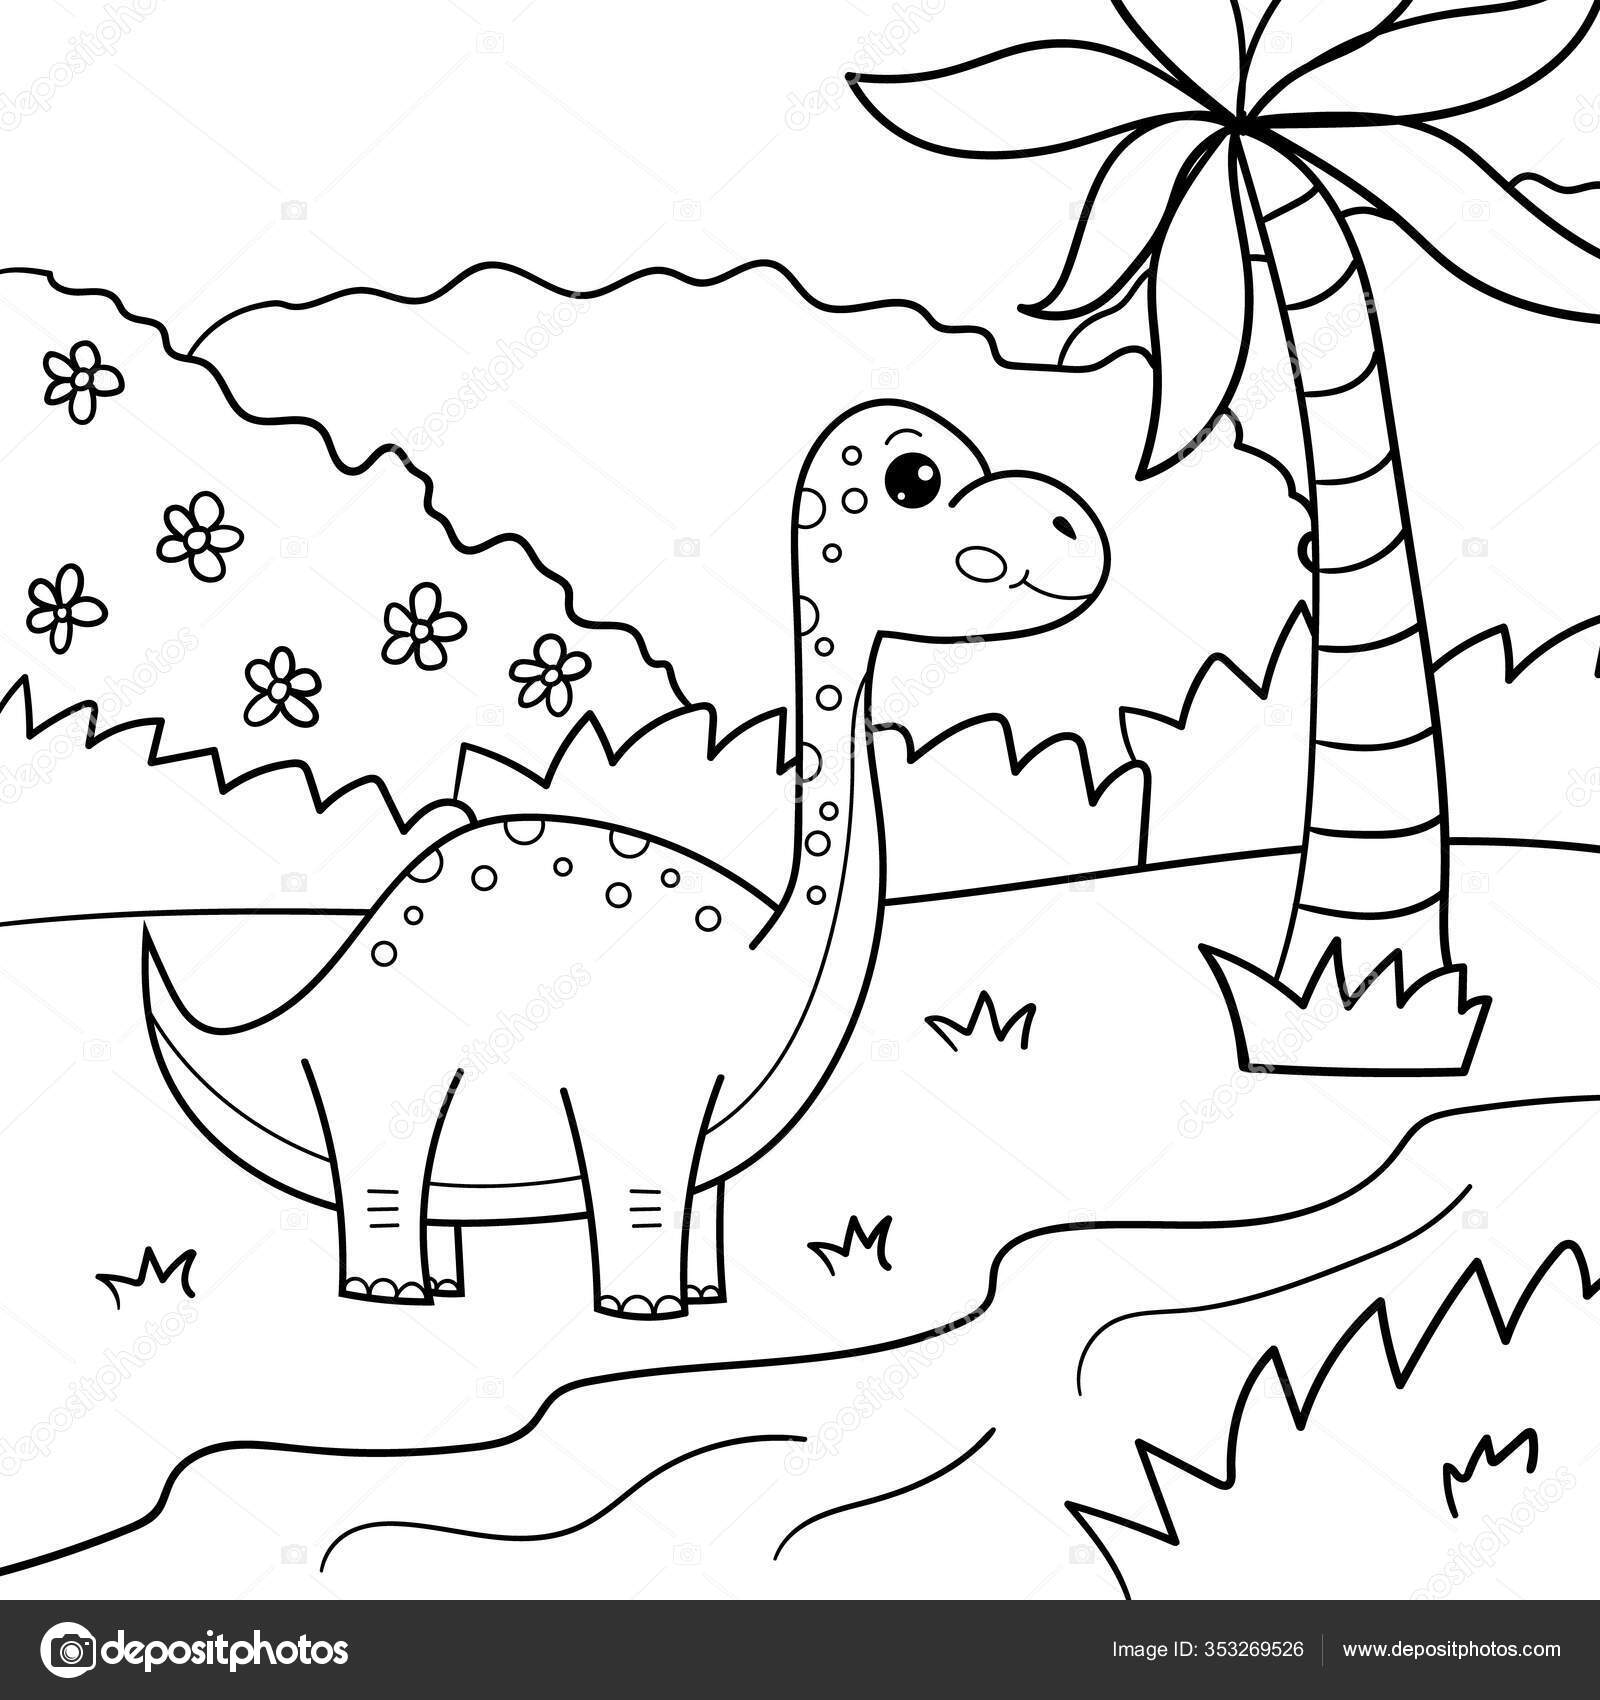 Desenhos de Dinossauros para colorir - Páginas para impressão grátis